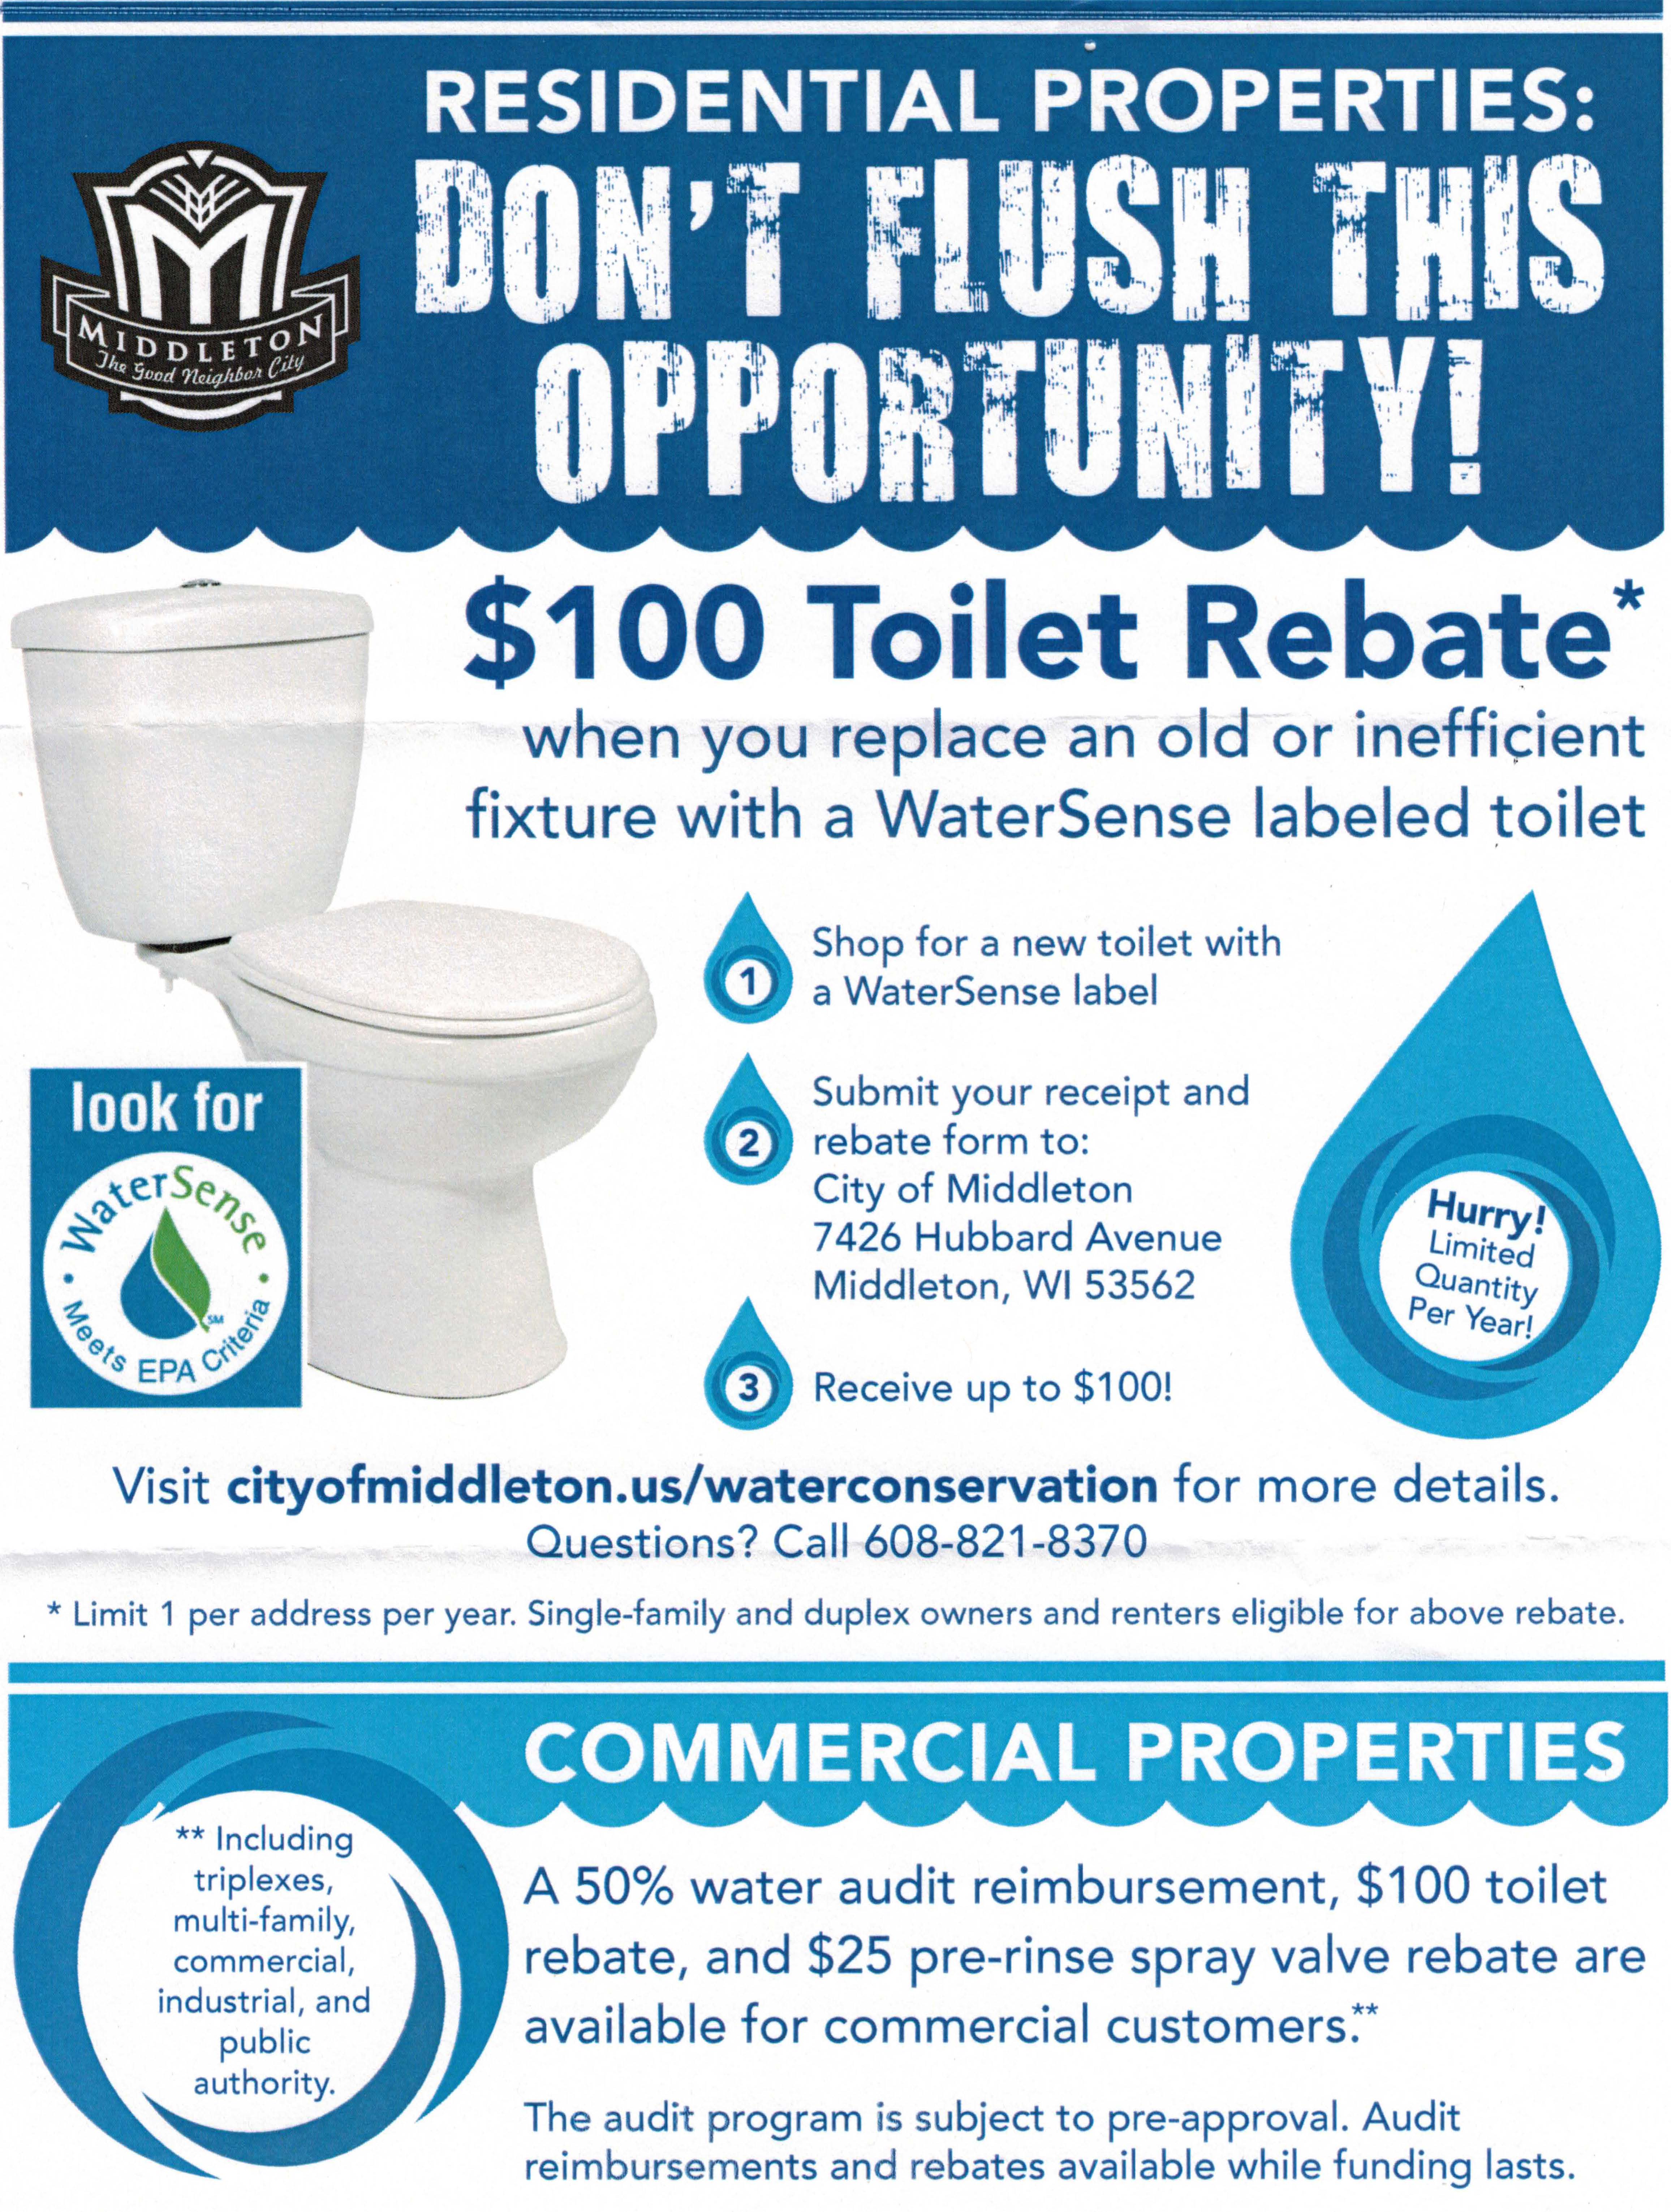 watersense-toilet-rebate-offer-starting-july-1st-in-middleton-wi